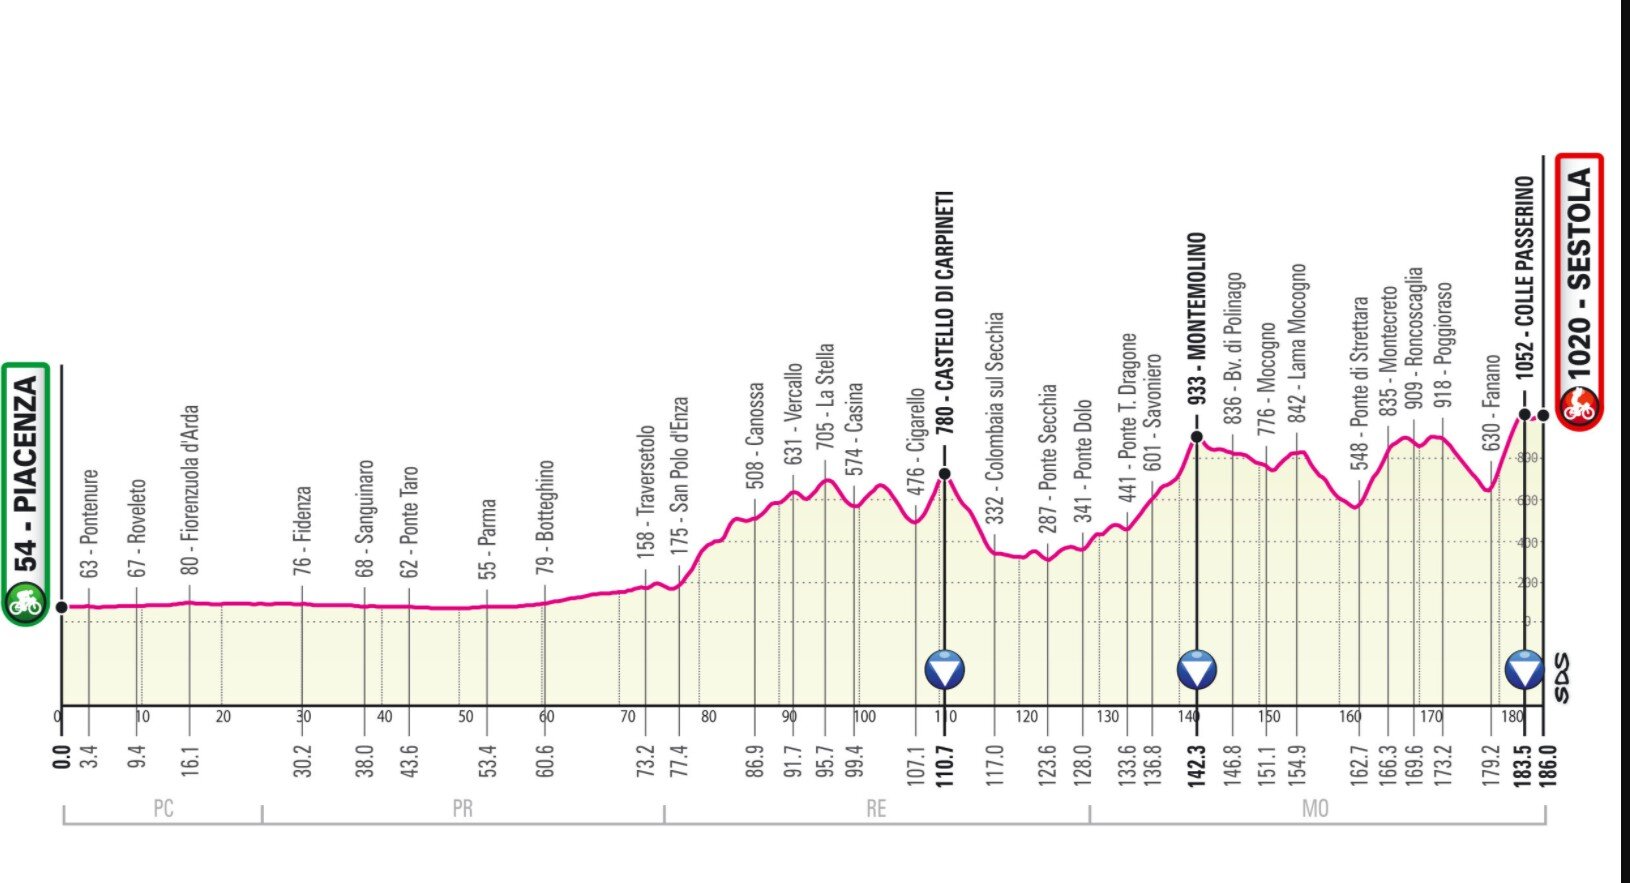 Etapa 4 Giro Italia 2021